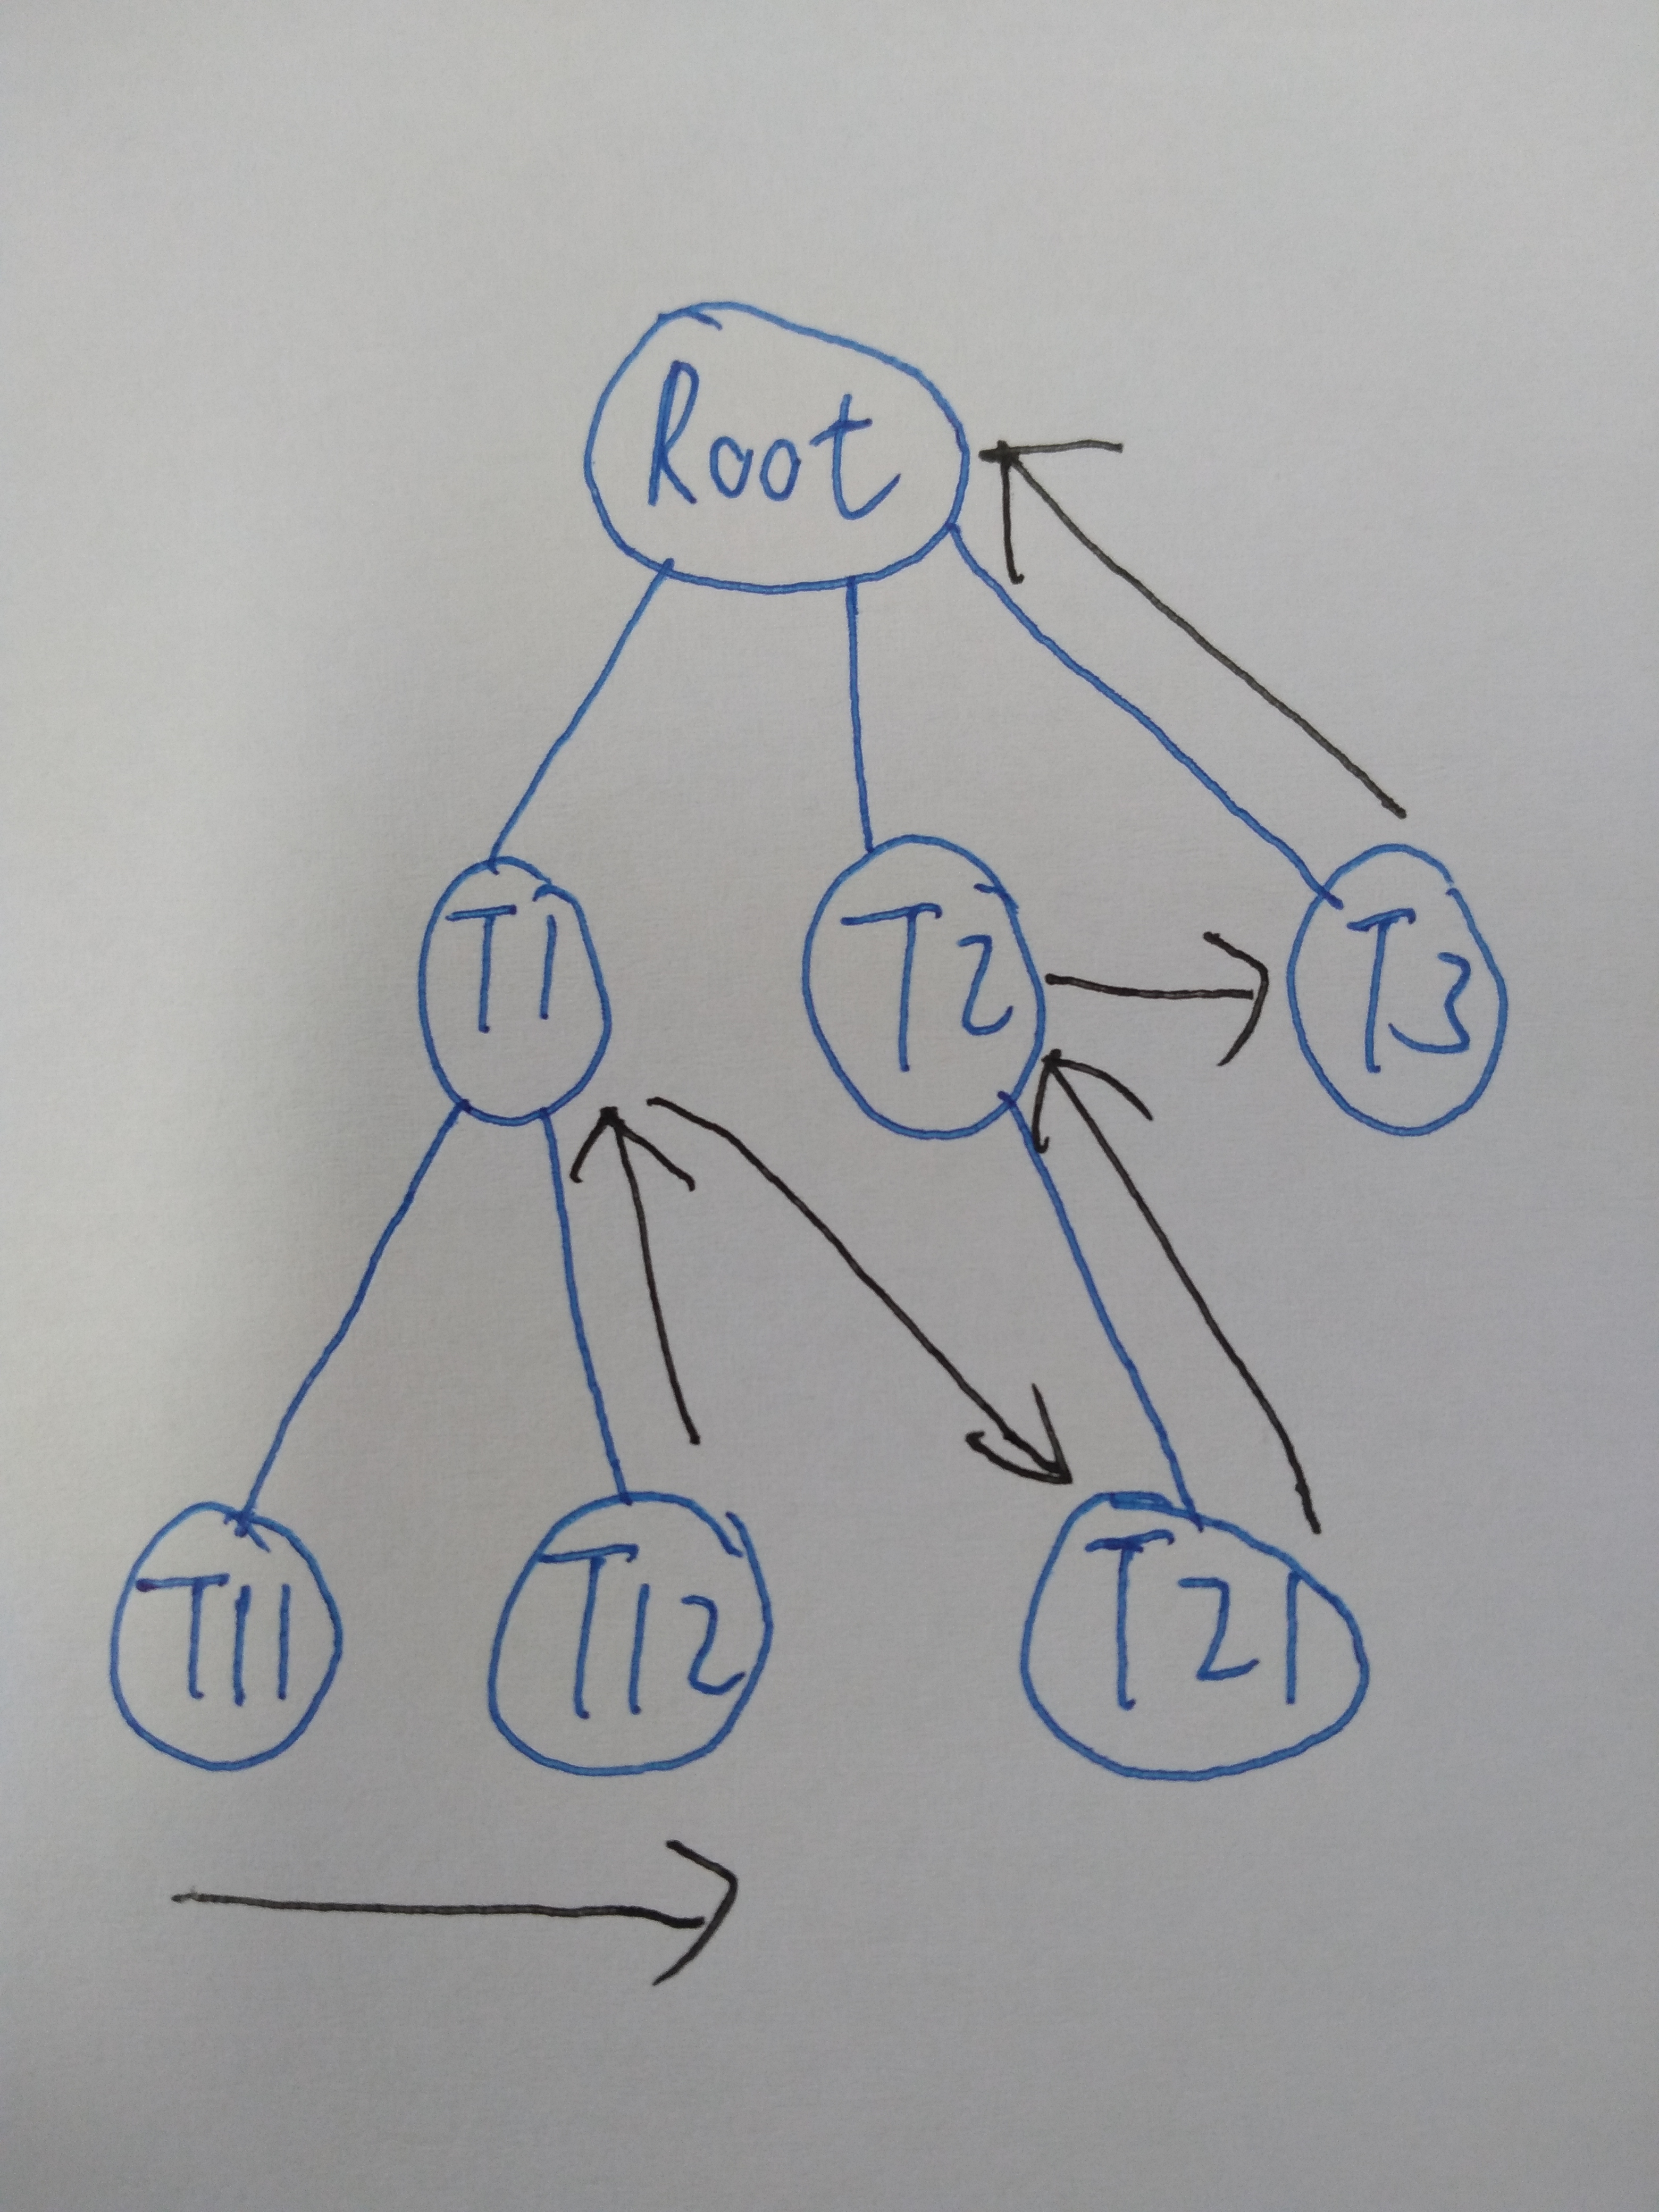 数据结构与算法学习笔记——树 C++实现 - 文章图片